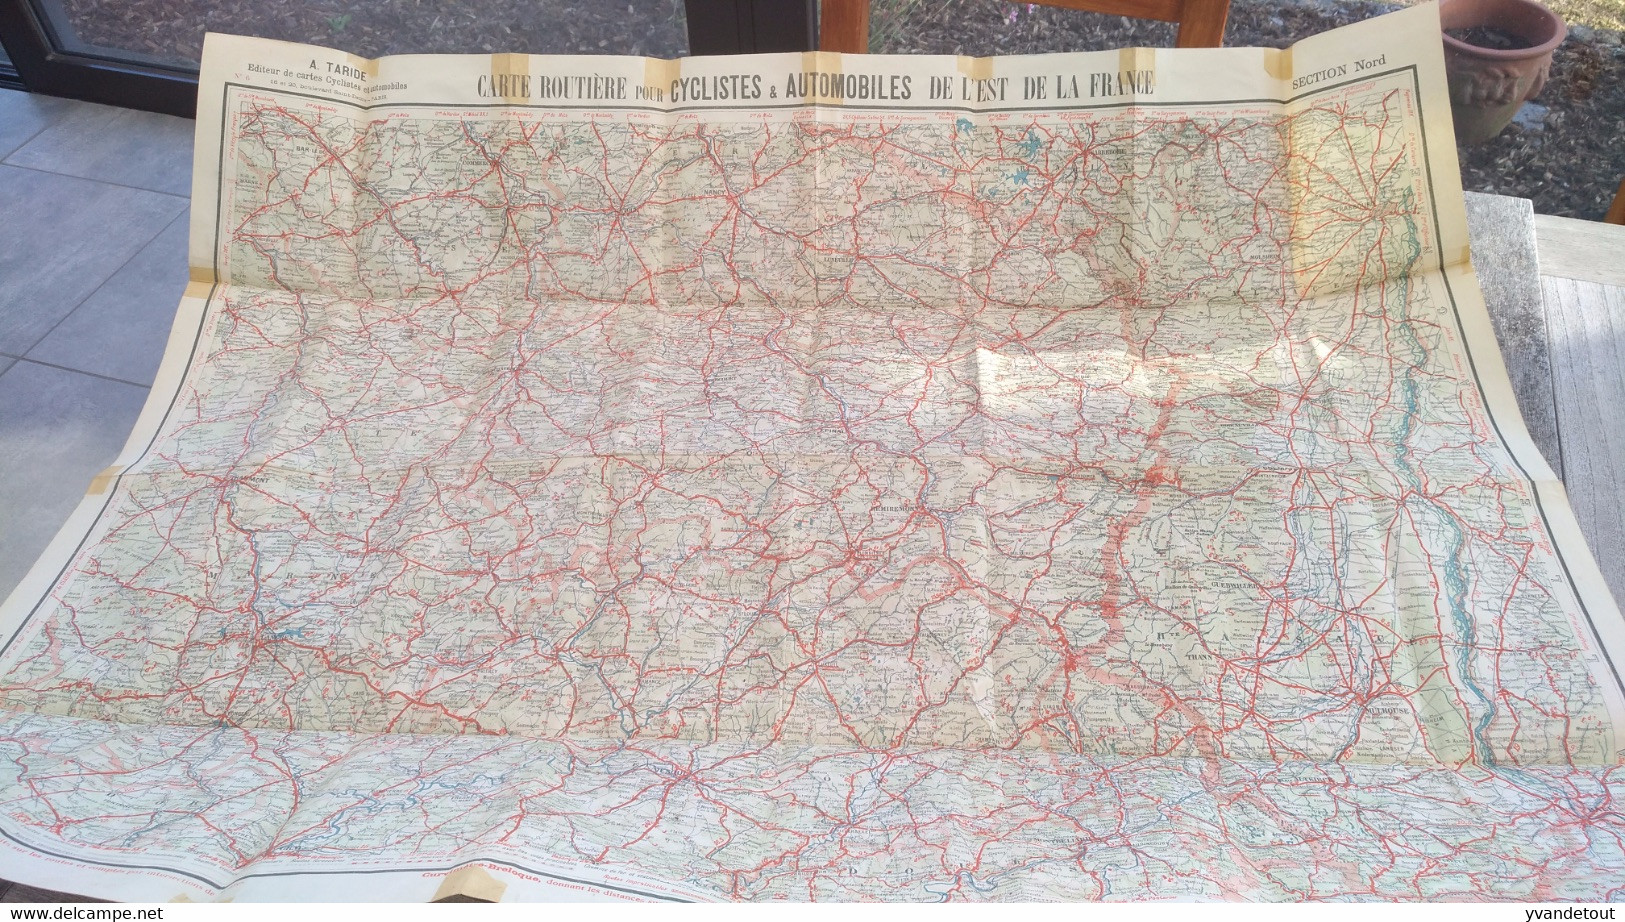 Carte Taride Papier. Carte Routière Pour Cyclistes & Automobiles . Section Nord De La France - Cartes Routières